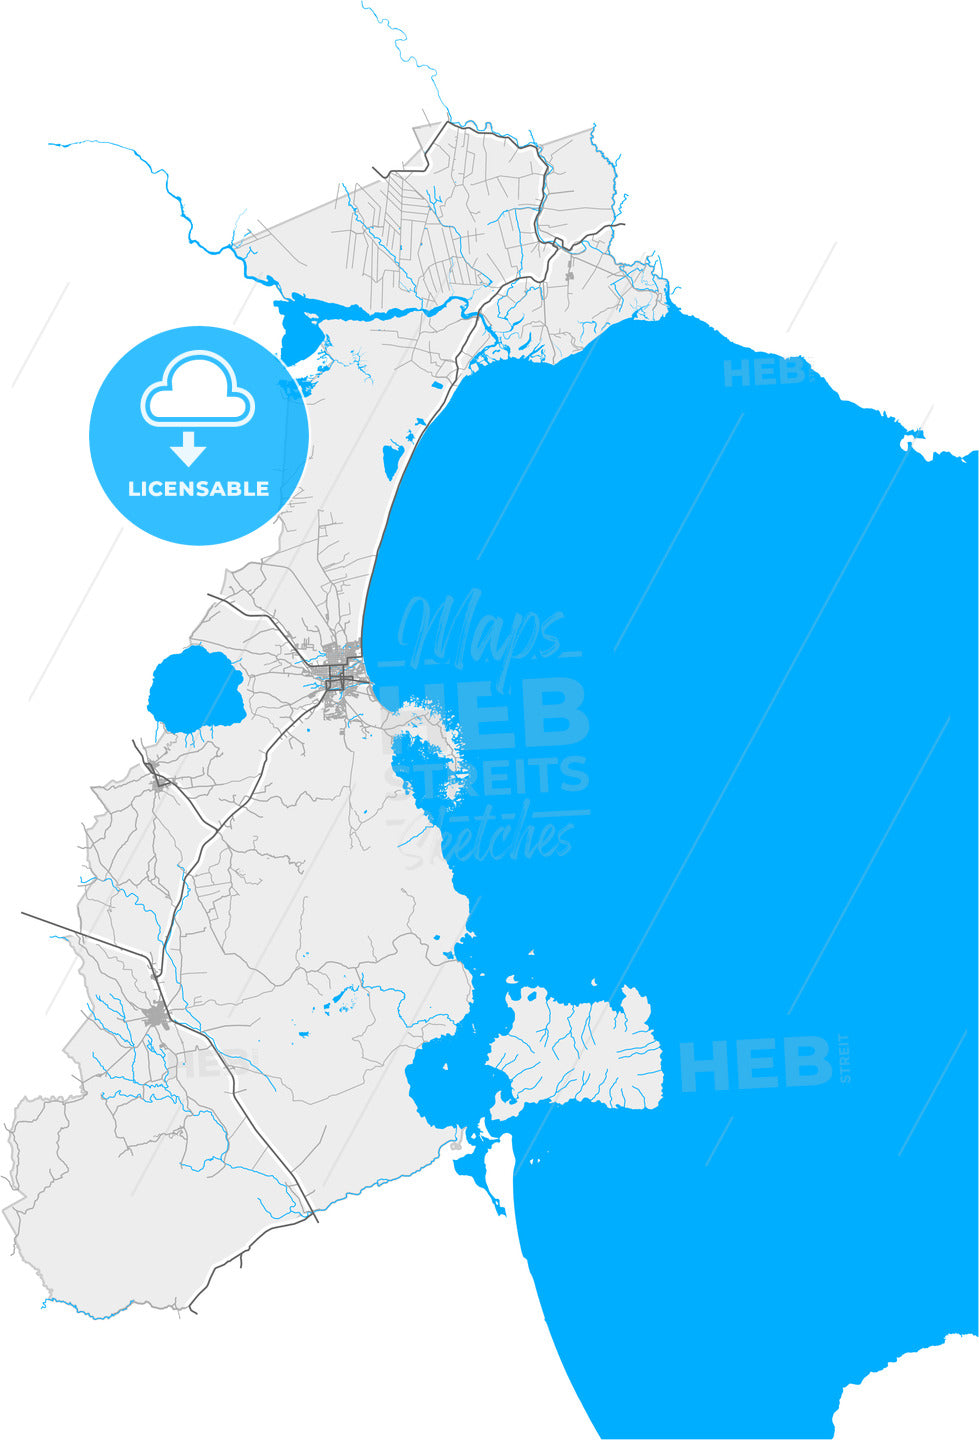 Granada, Granada, Nicaragua, high quality vector map